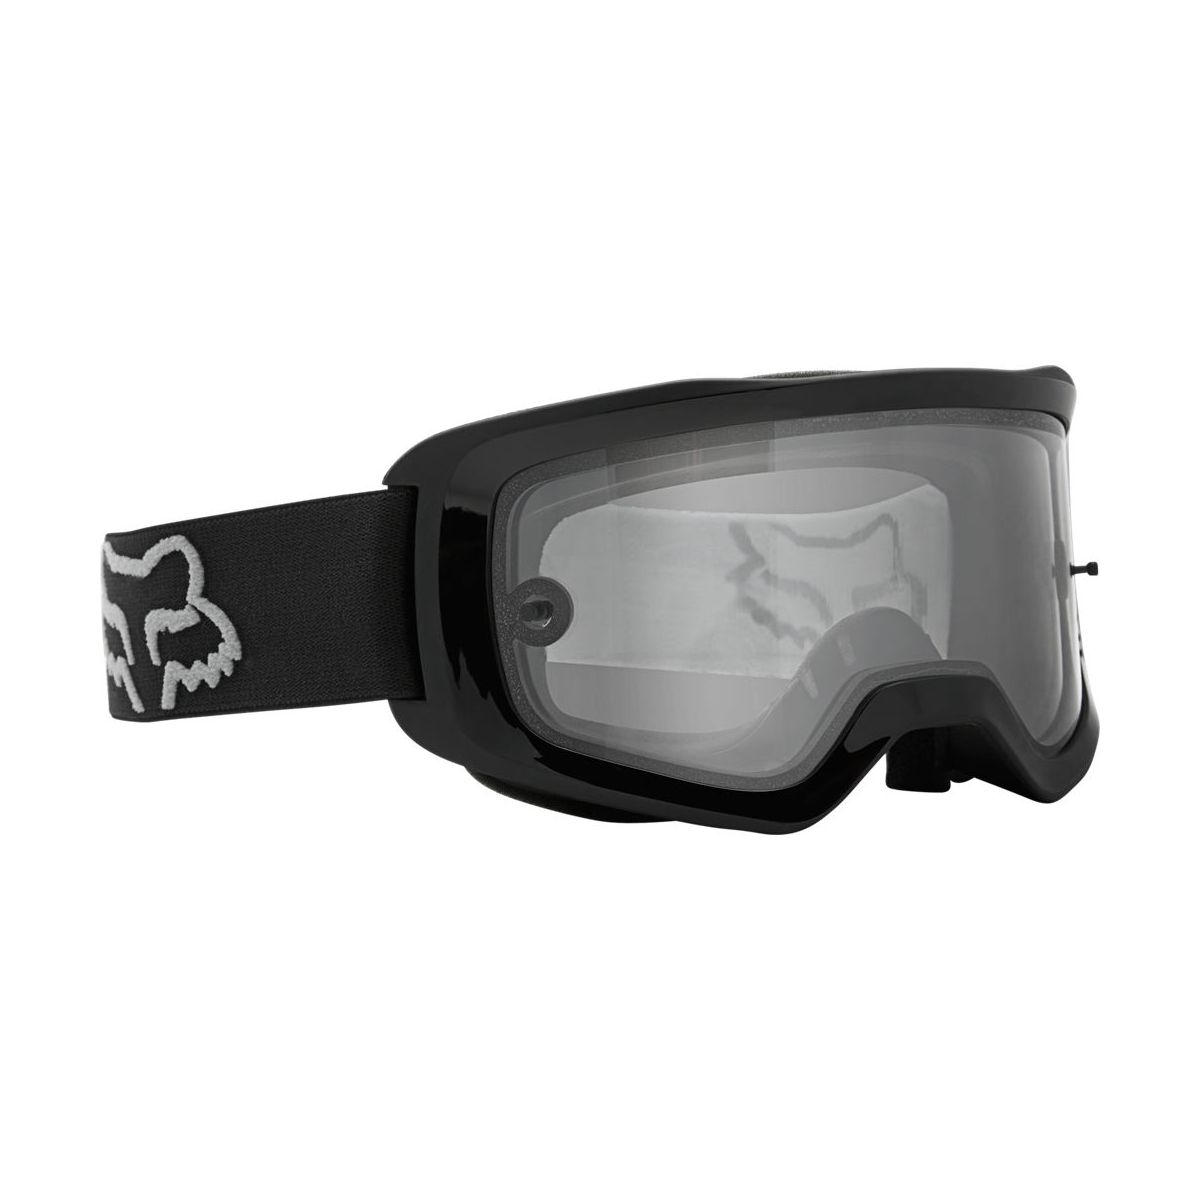 Gafas máscara Fox Main X Stray lente transparente color negro para descenso y enduro | the bike village 26471